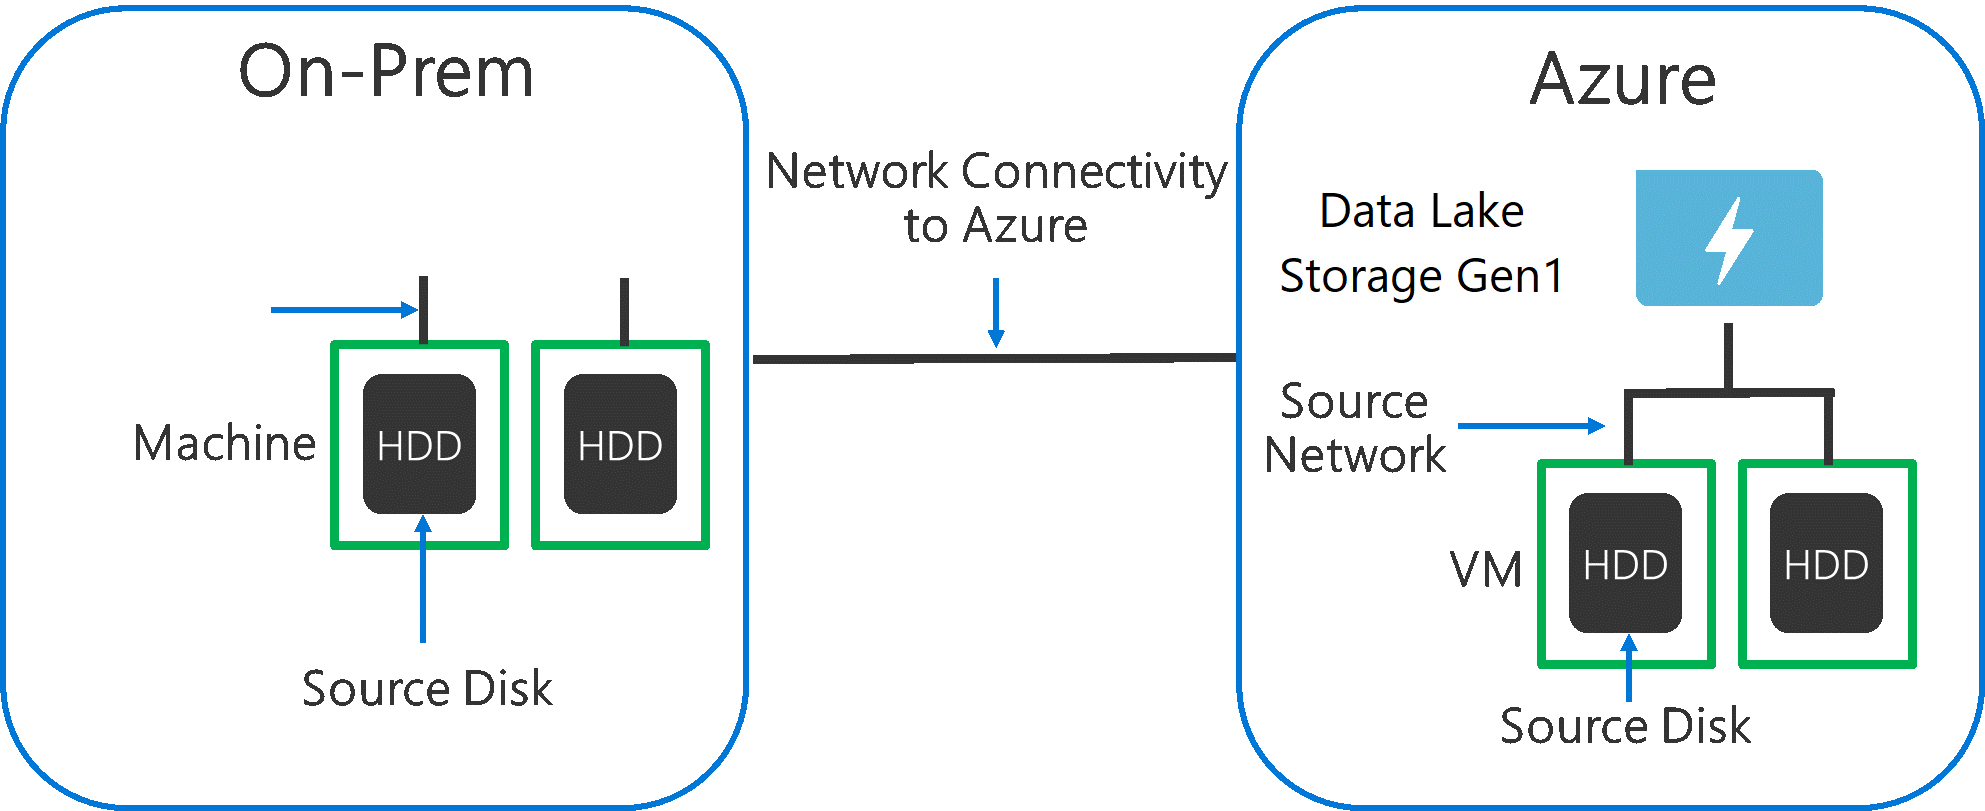 此圖顯示來源硬體、來源網路硬體和與 Data Lake Storage Gen1 的網路連線可能會是瓶頸。